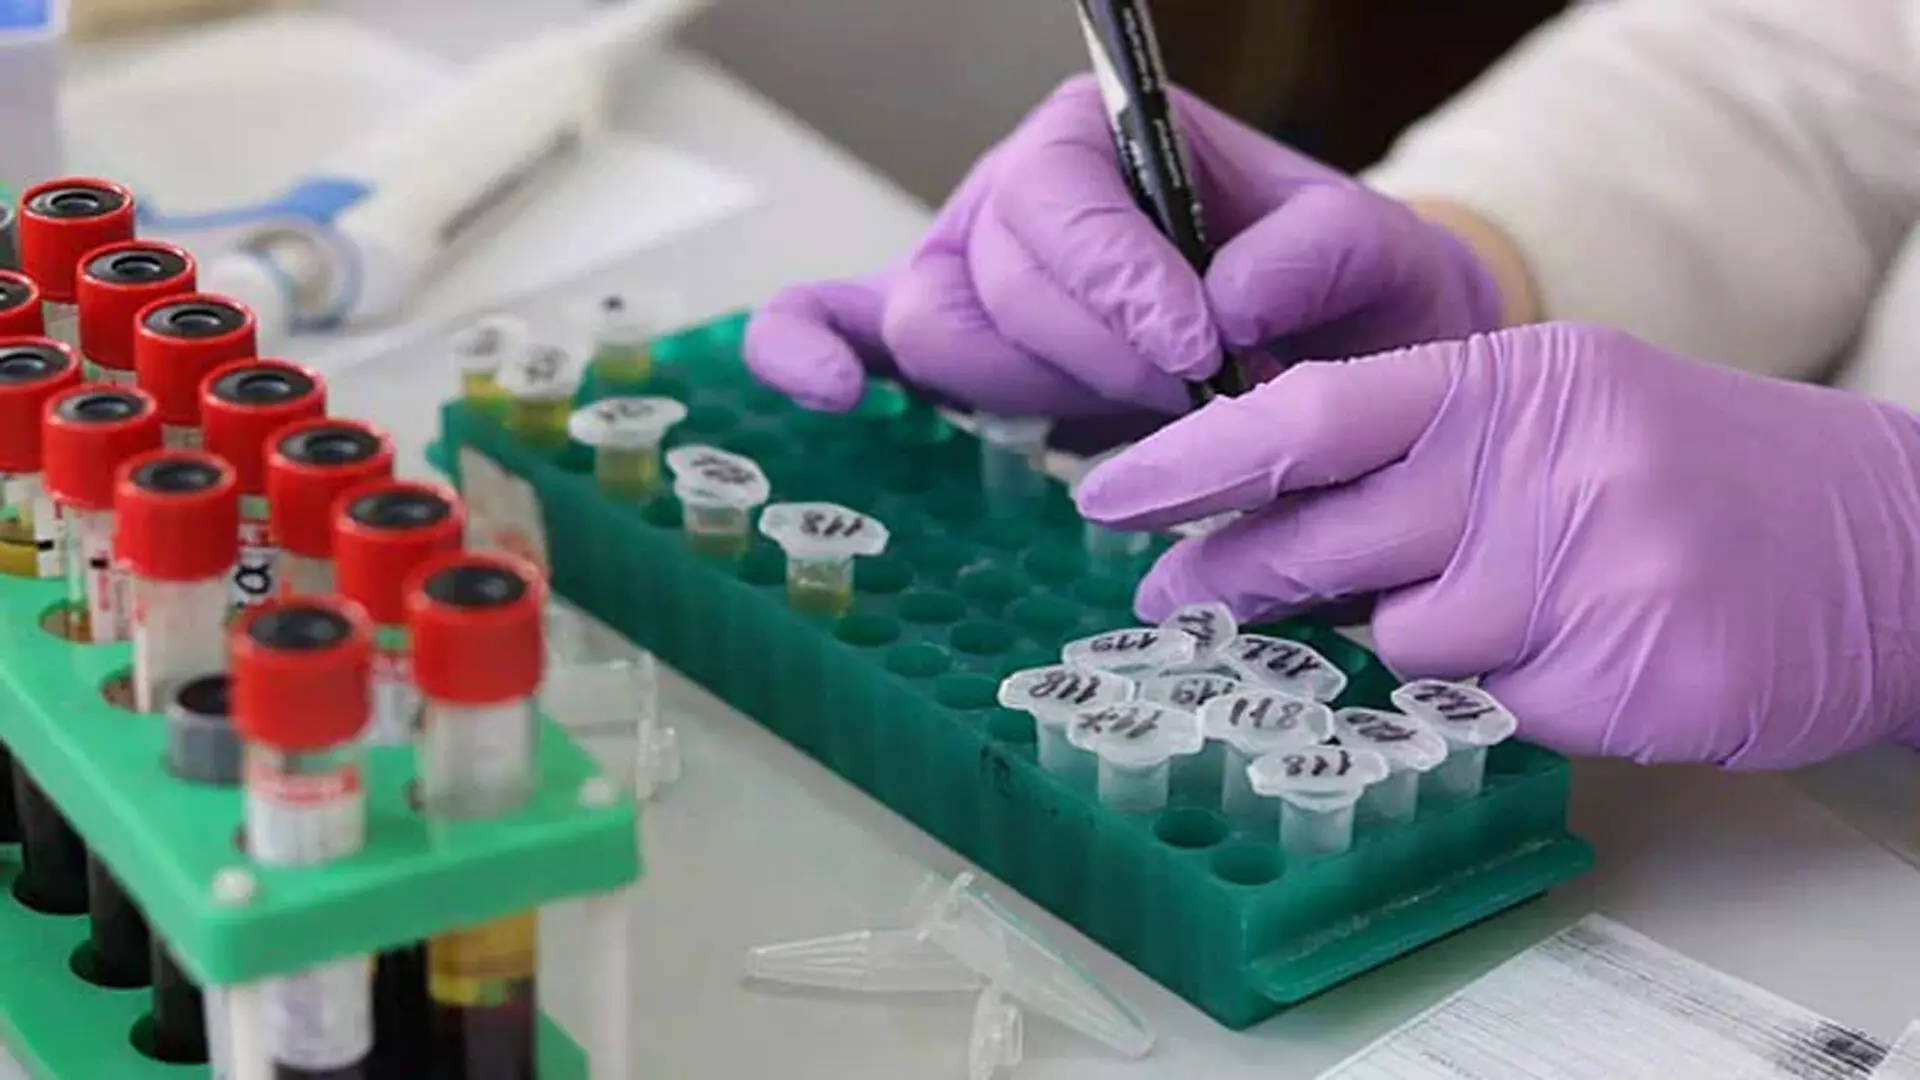 वैज्ञानिकों ने इबोला वायरस को रोकने के लिए संभावित नई दवा की खोज की